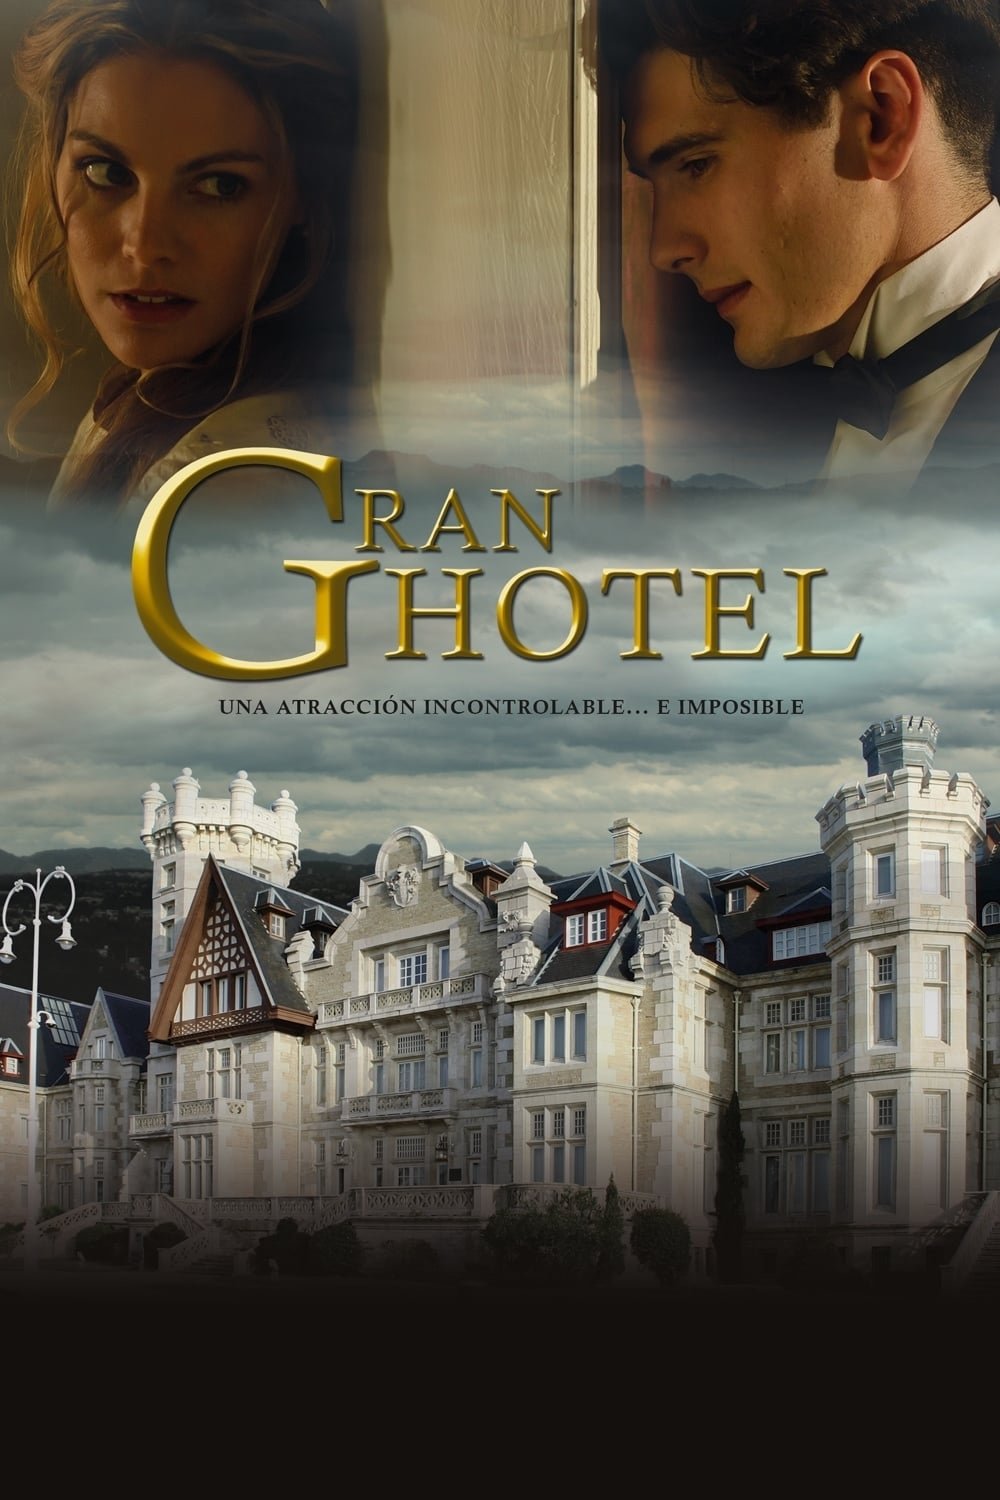 Grand hôtel (2011) - Saison 3